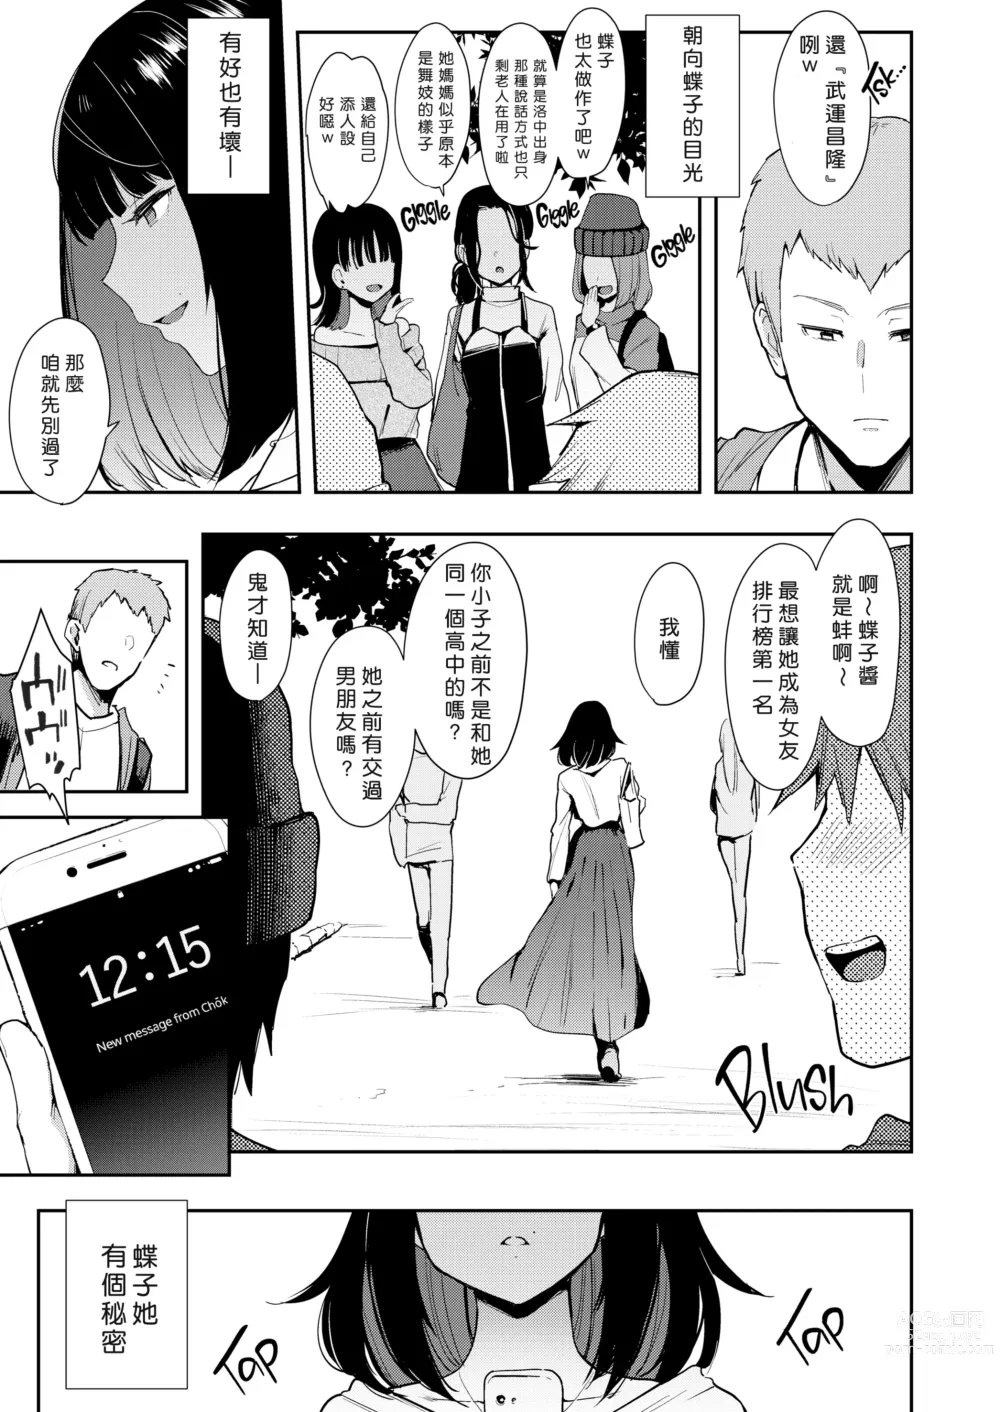 Page 7 of doujinshi Chouko I~V